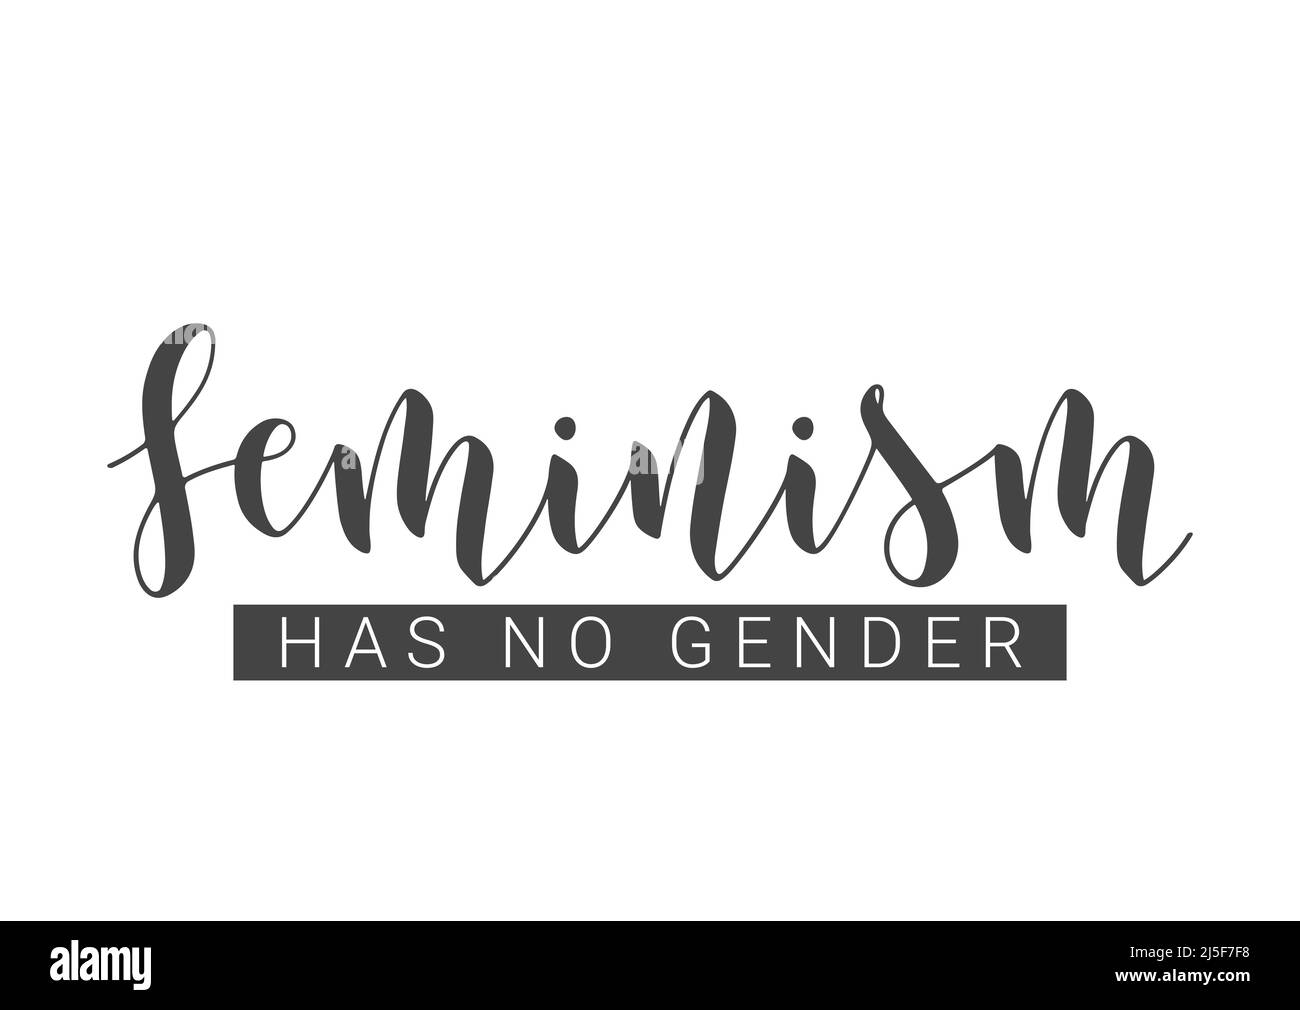 Vektorgrafik. Handgeschriebene Schriftzüge des Feminismus haben kein Geschlecht. Vorlage für Karte, Etikett, Postkarte, Poster, Aufkleber, Print- oder Web-Produkt. Stock Vektor